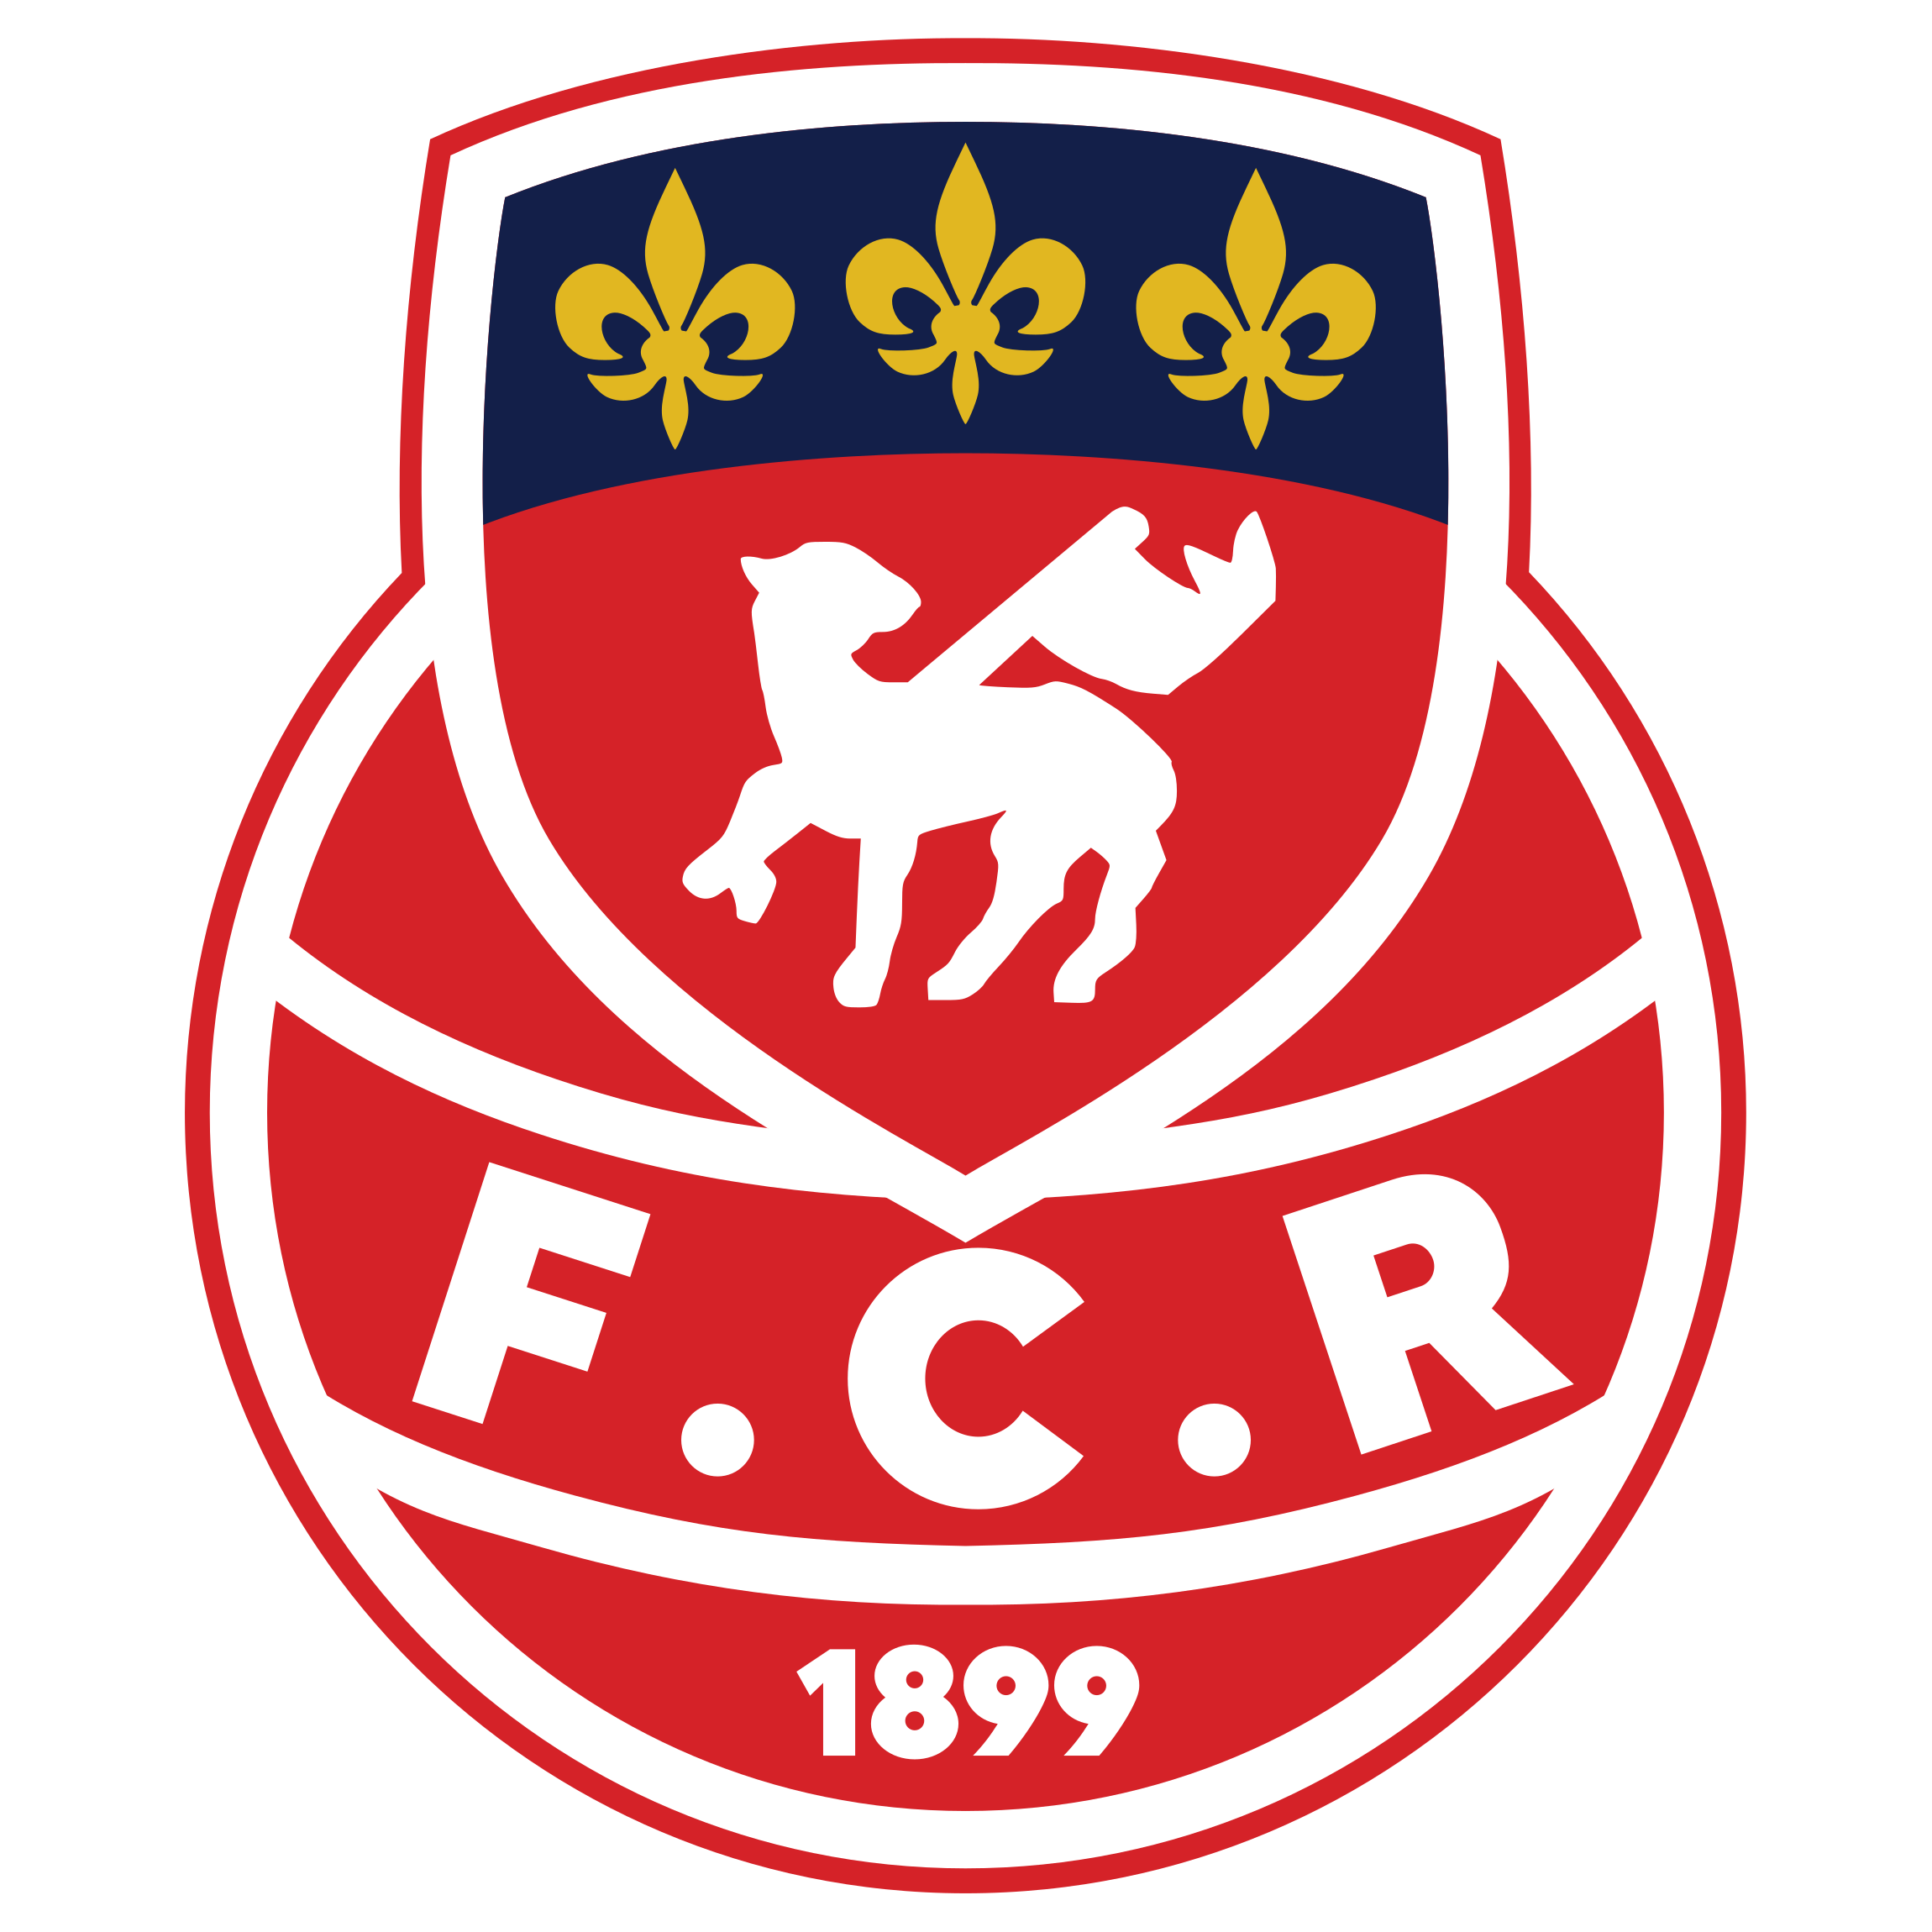 Wappen FC Rouen 1899 diverse